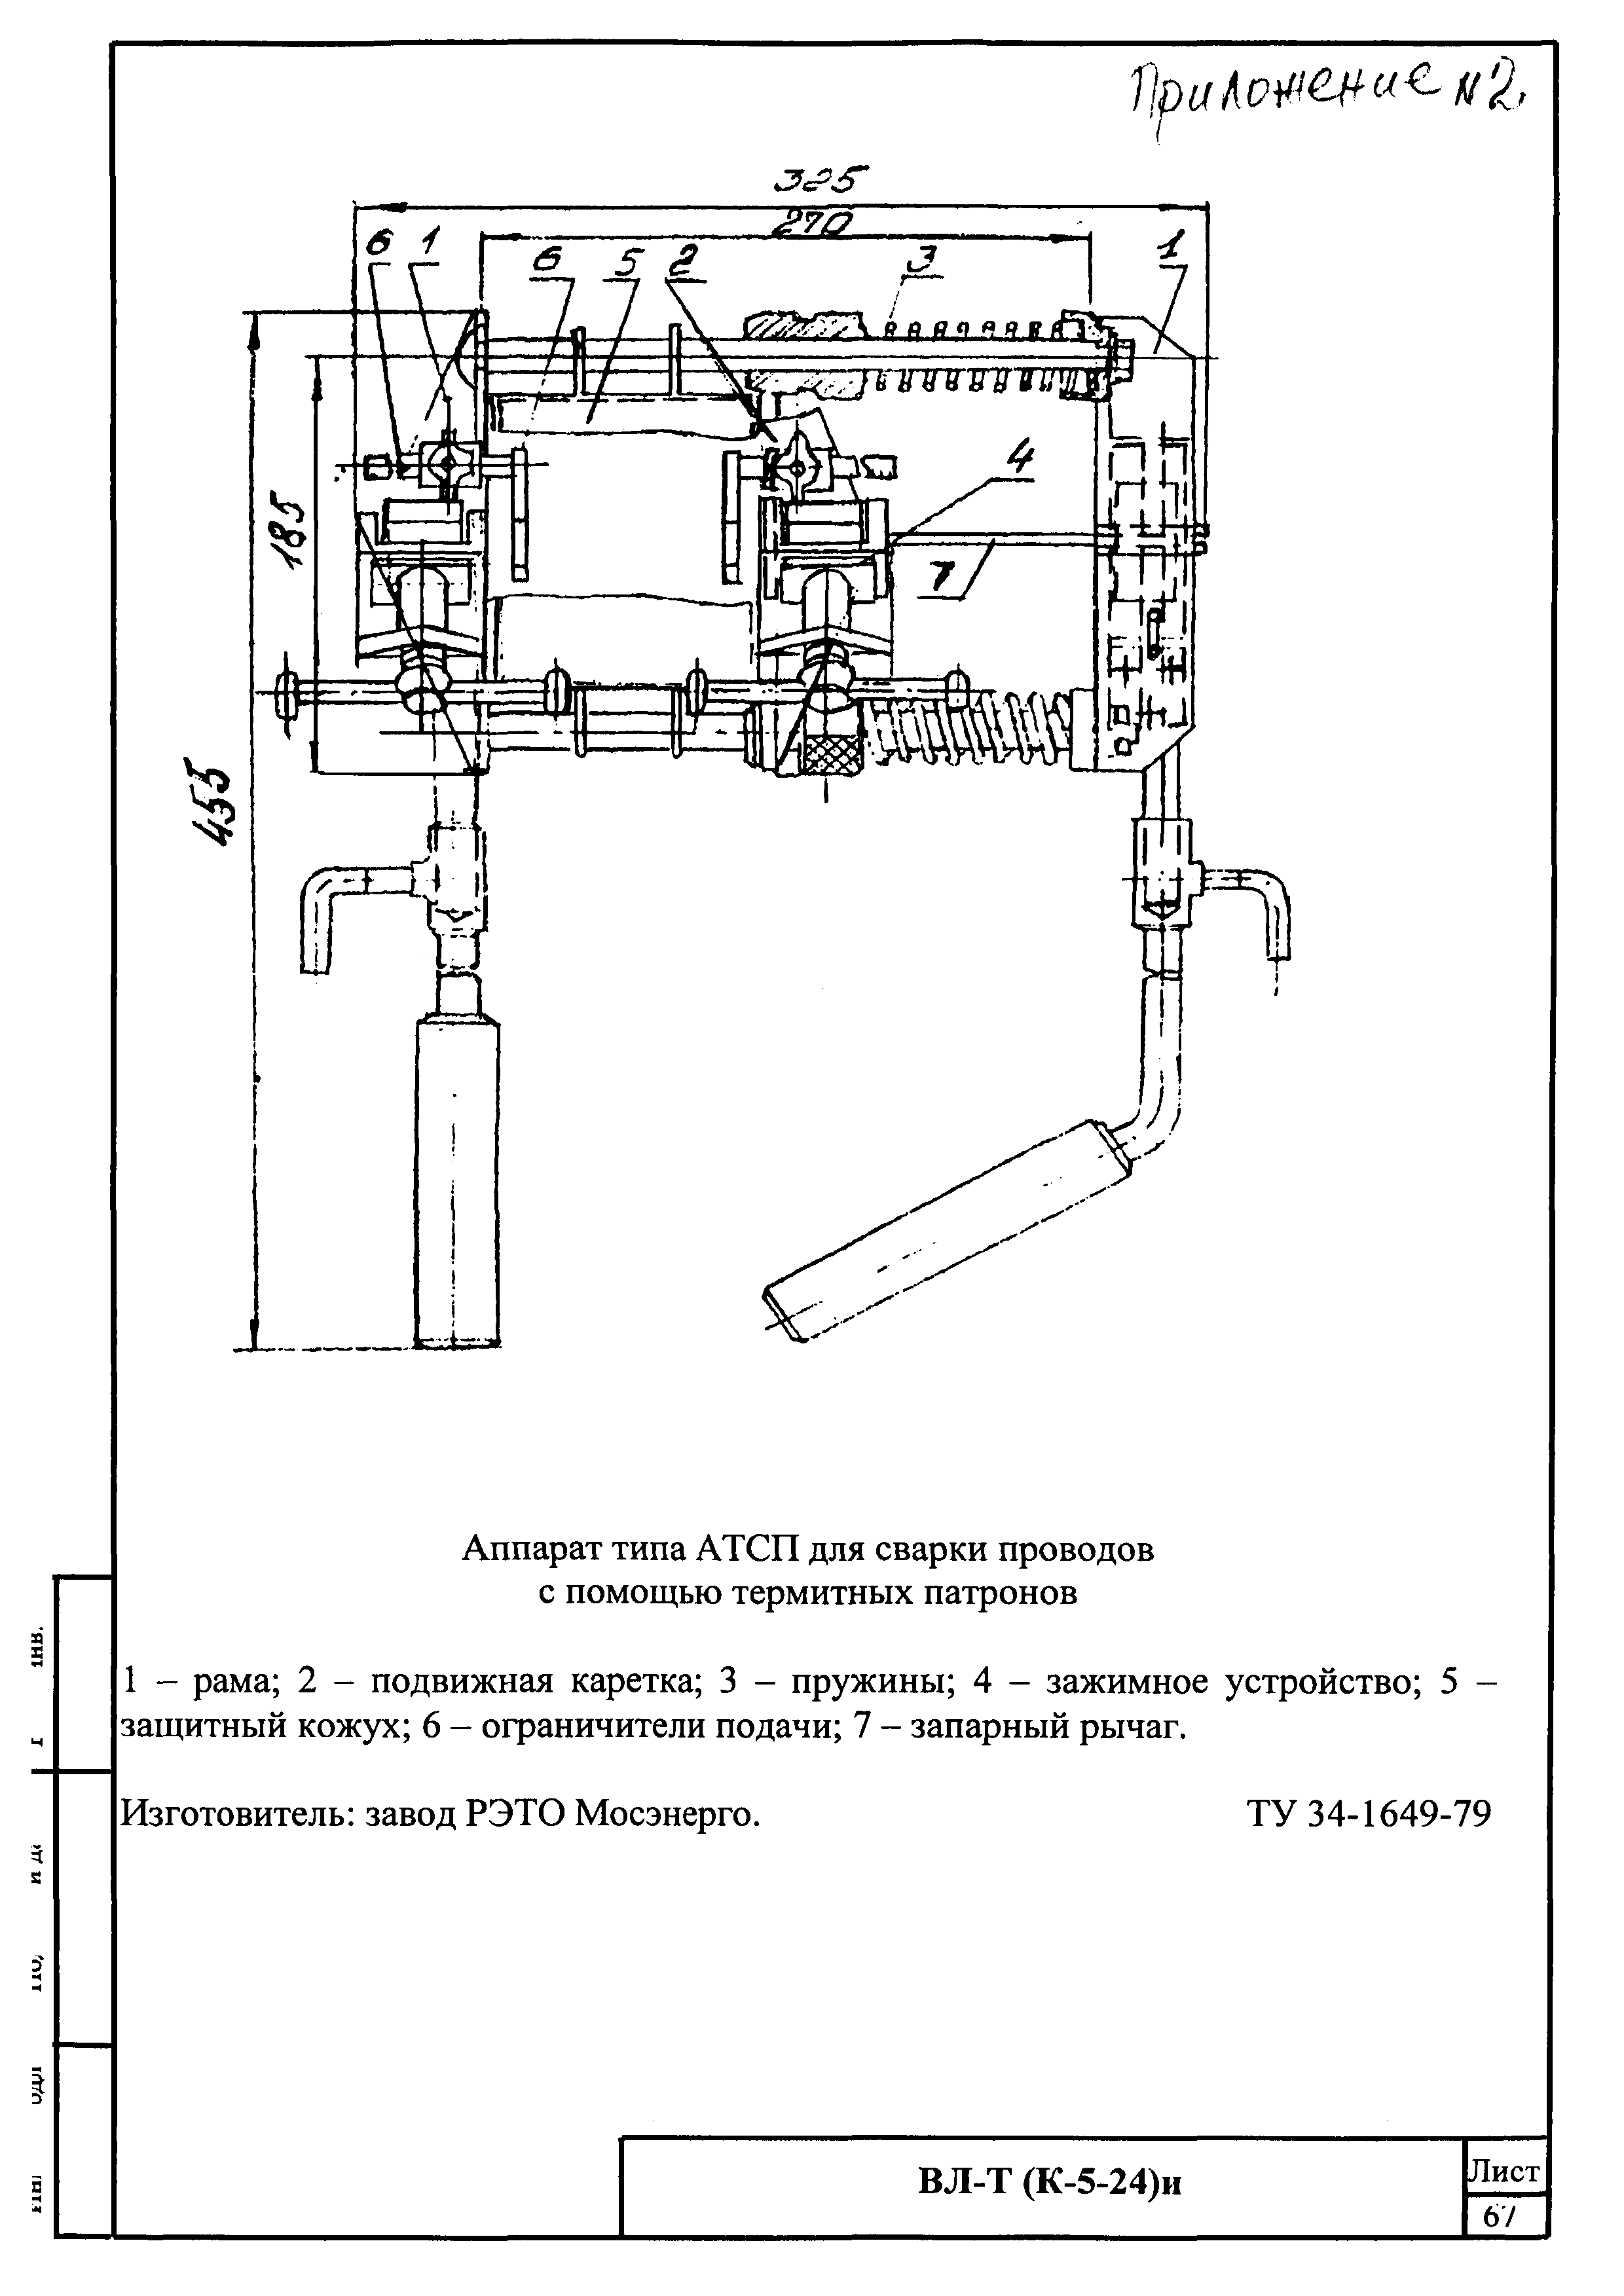 Технологическая карта К-5-24-5и